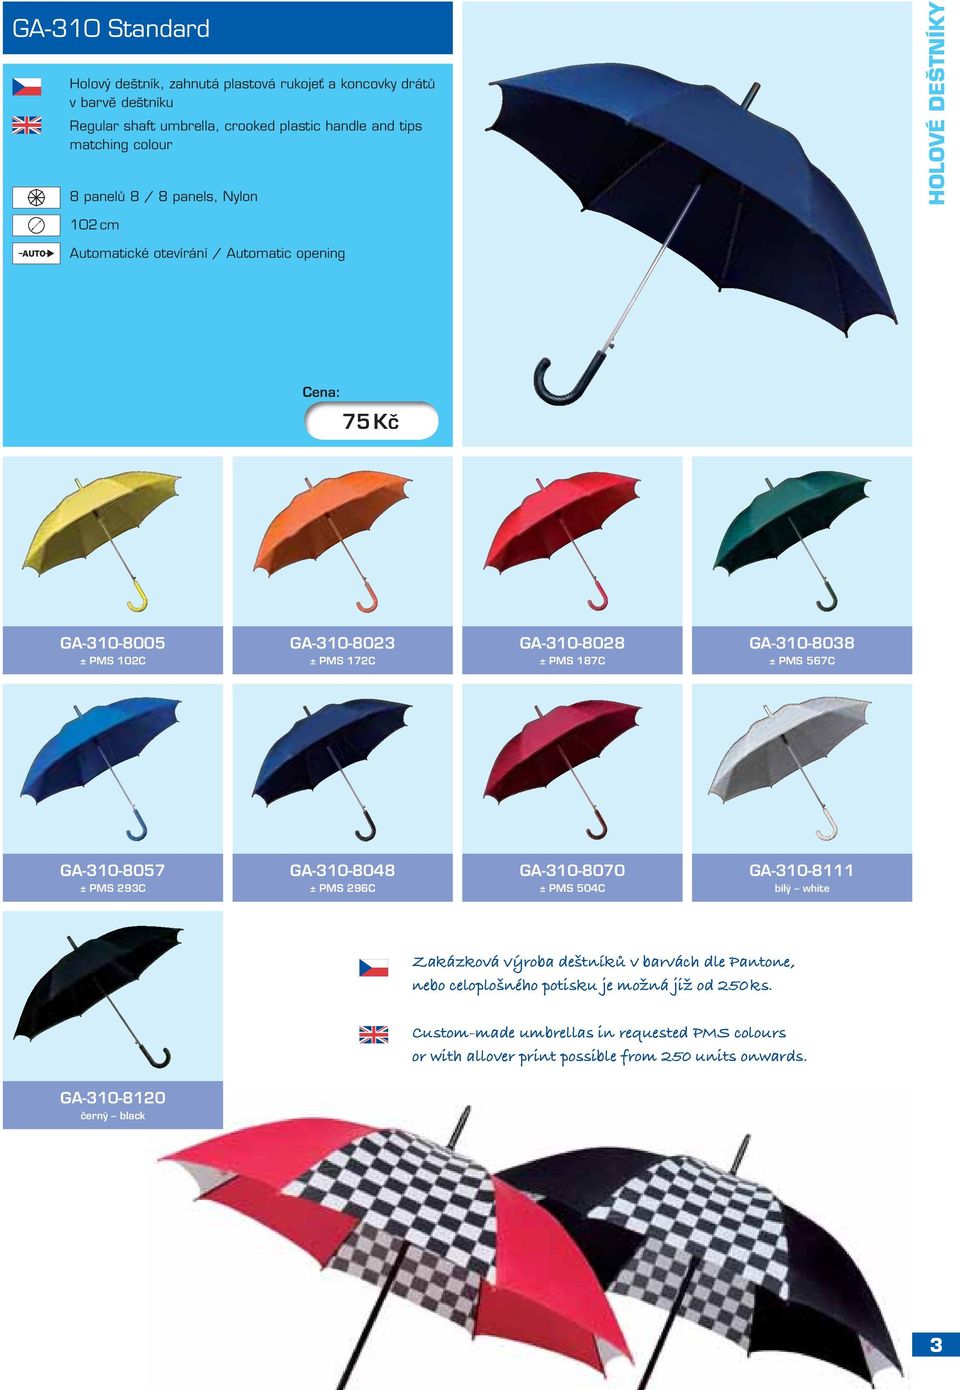 187C GA-310-8038 ± PMS 567C GA-310-8057 ± PMS 293C GA-310-8048 ± PMS 296C GA-310-8070 ± PMS 504C GA-310-8111 bílý white Zakázková výroba deštníků v barvách dle